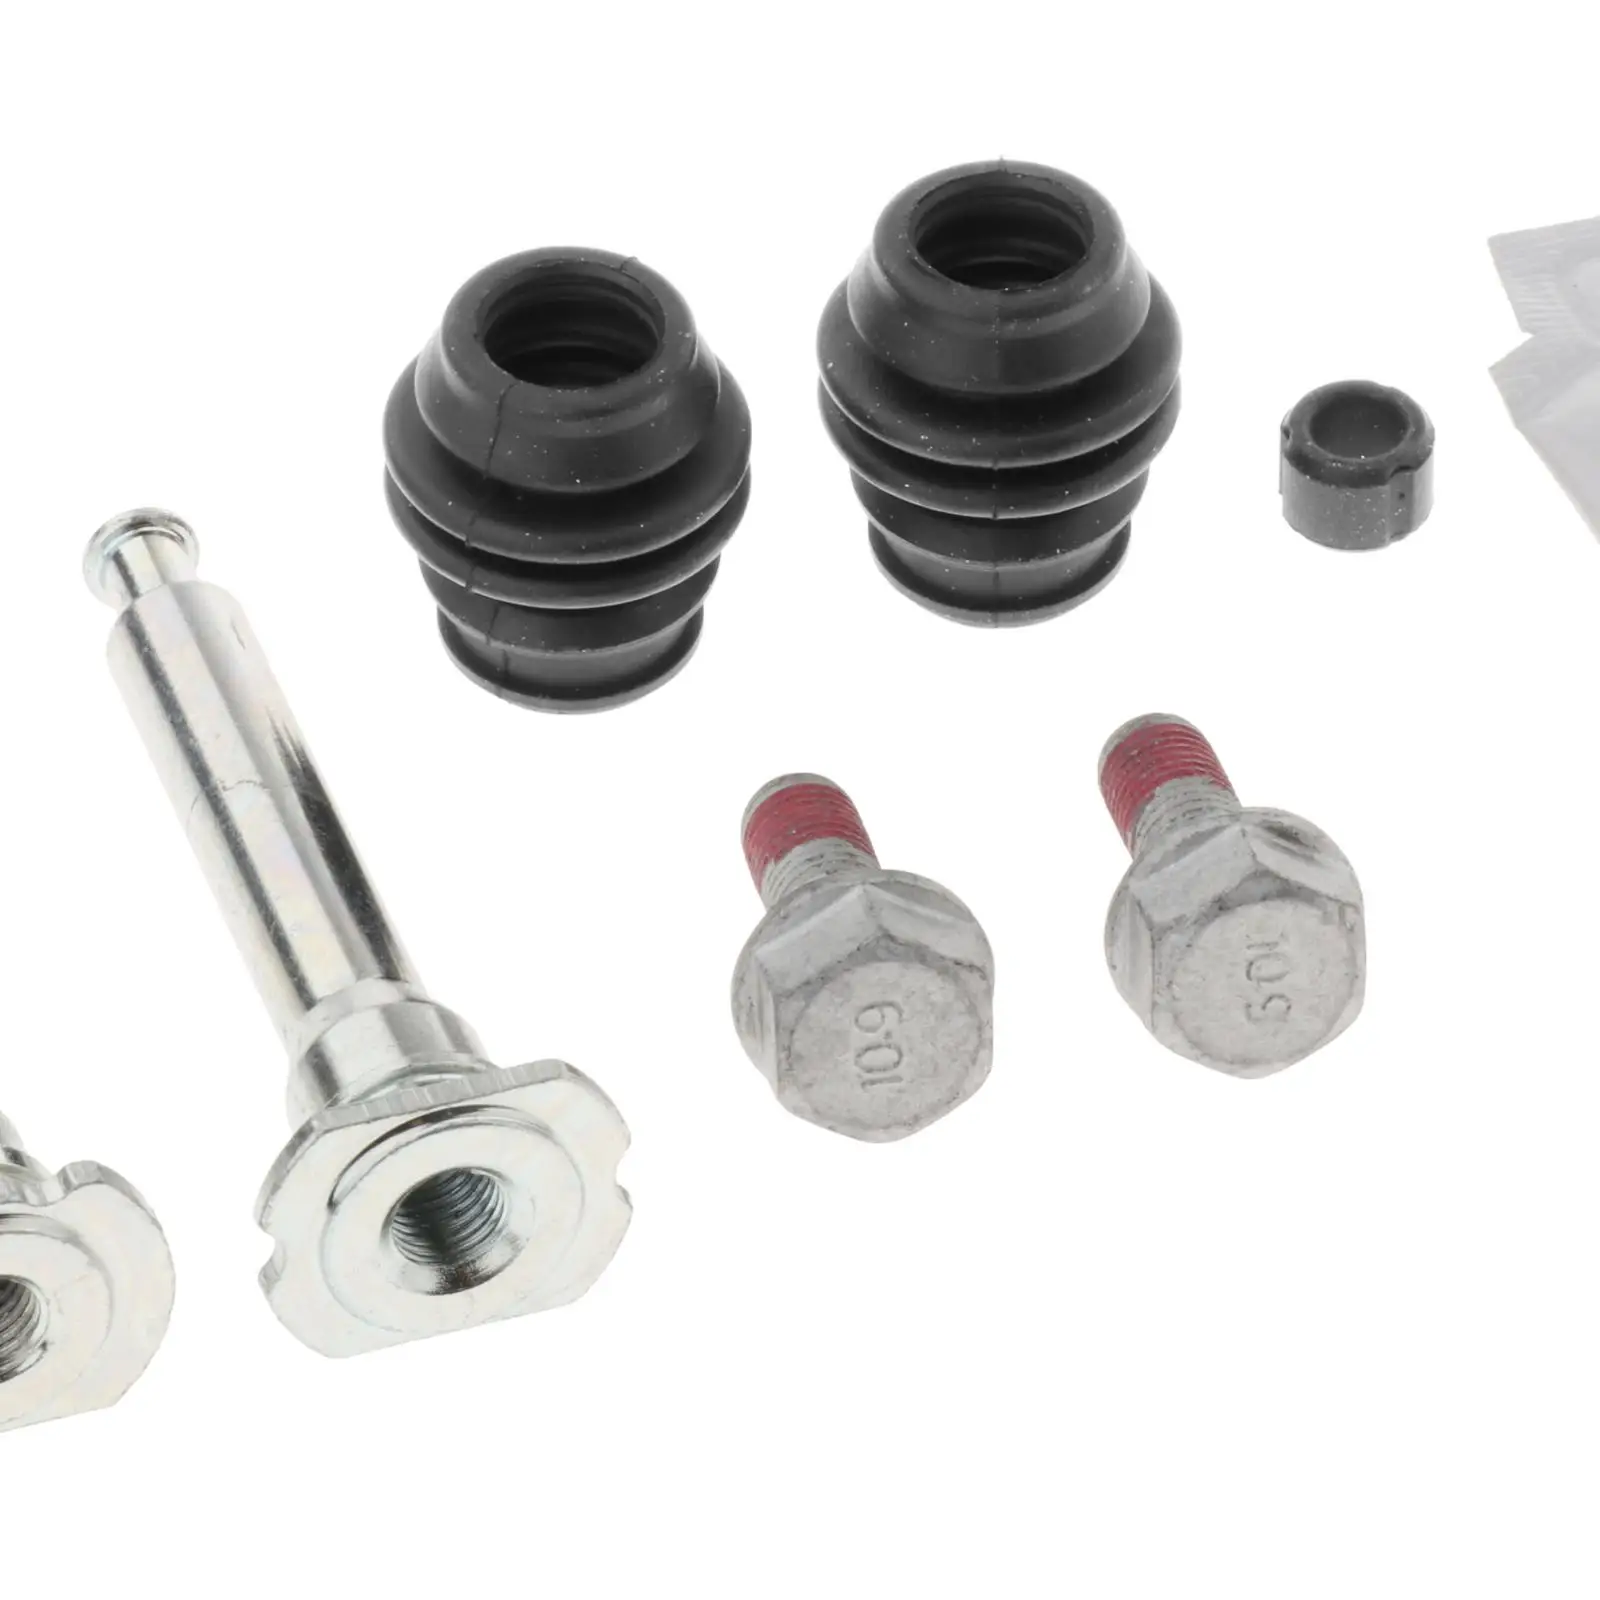 Slider Bolt Guide Pin Car Truck Parts for Honda MK2 02-06 Front Brake Housing Pin Repair Caliper Kit Guide